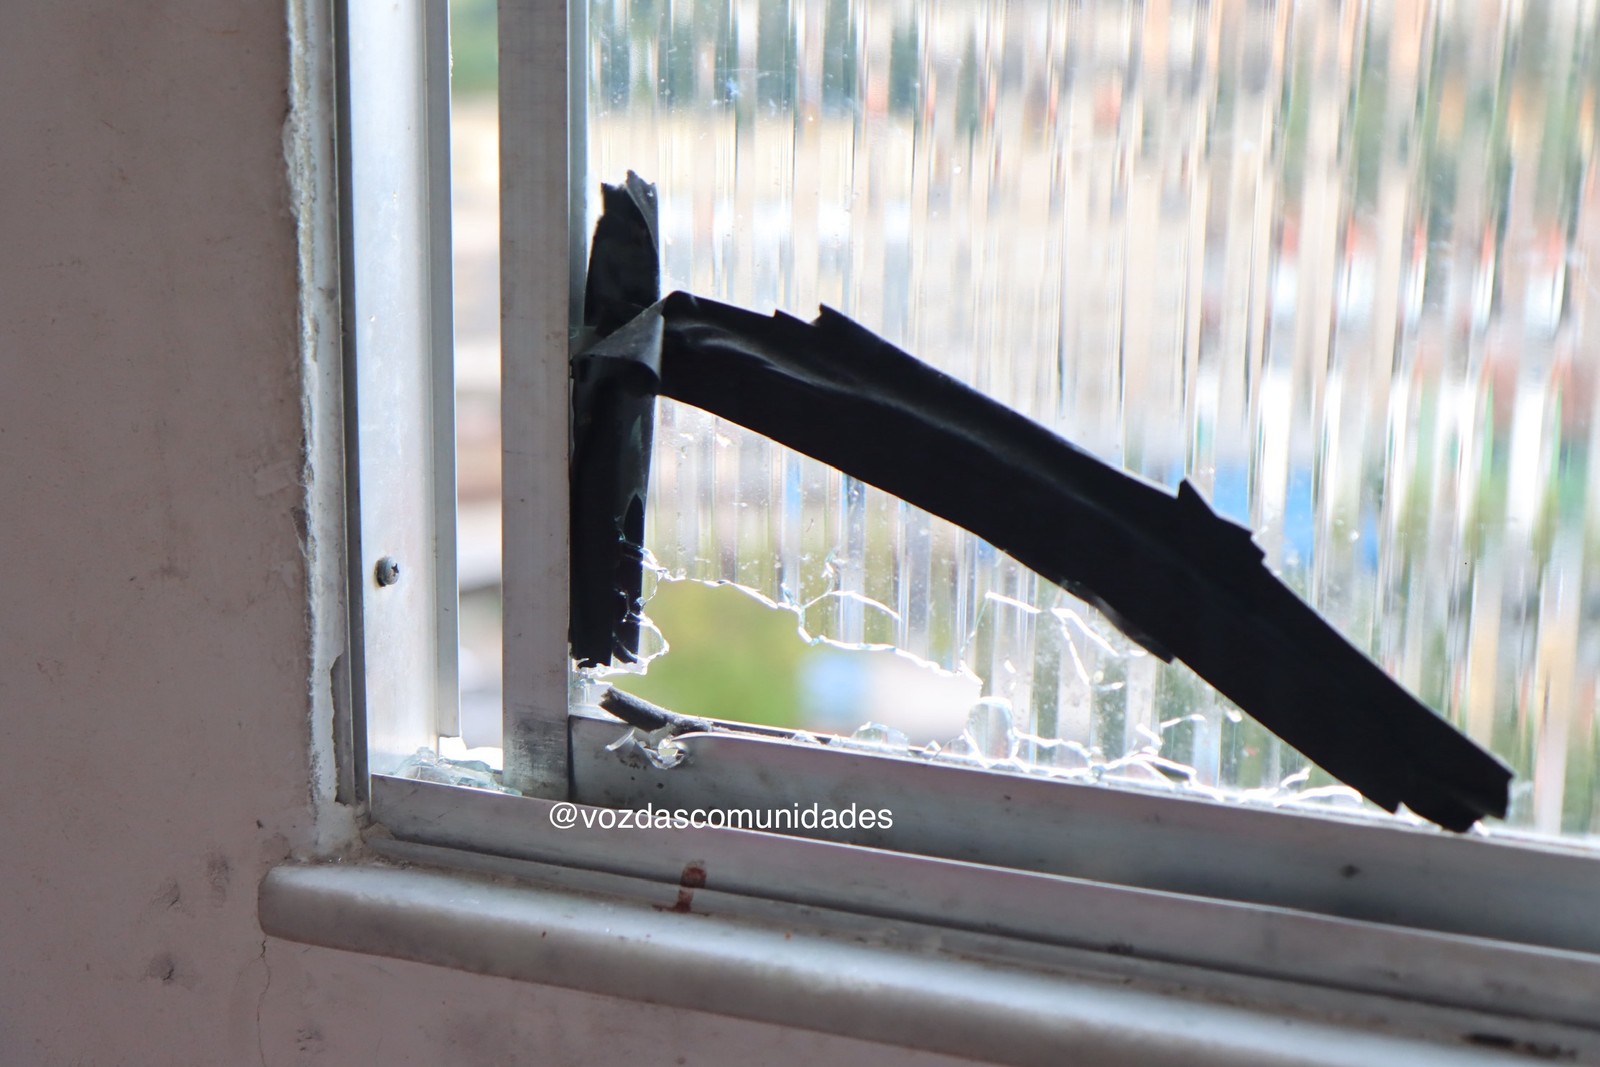 Projétil que matou Eloah Santos passou pela janela da casa da família — Foto: Renato Moura/Voz das Comunidades